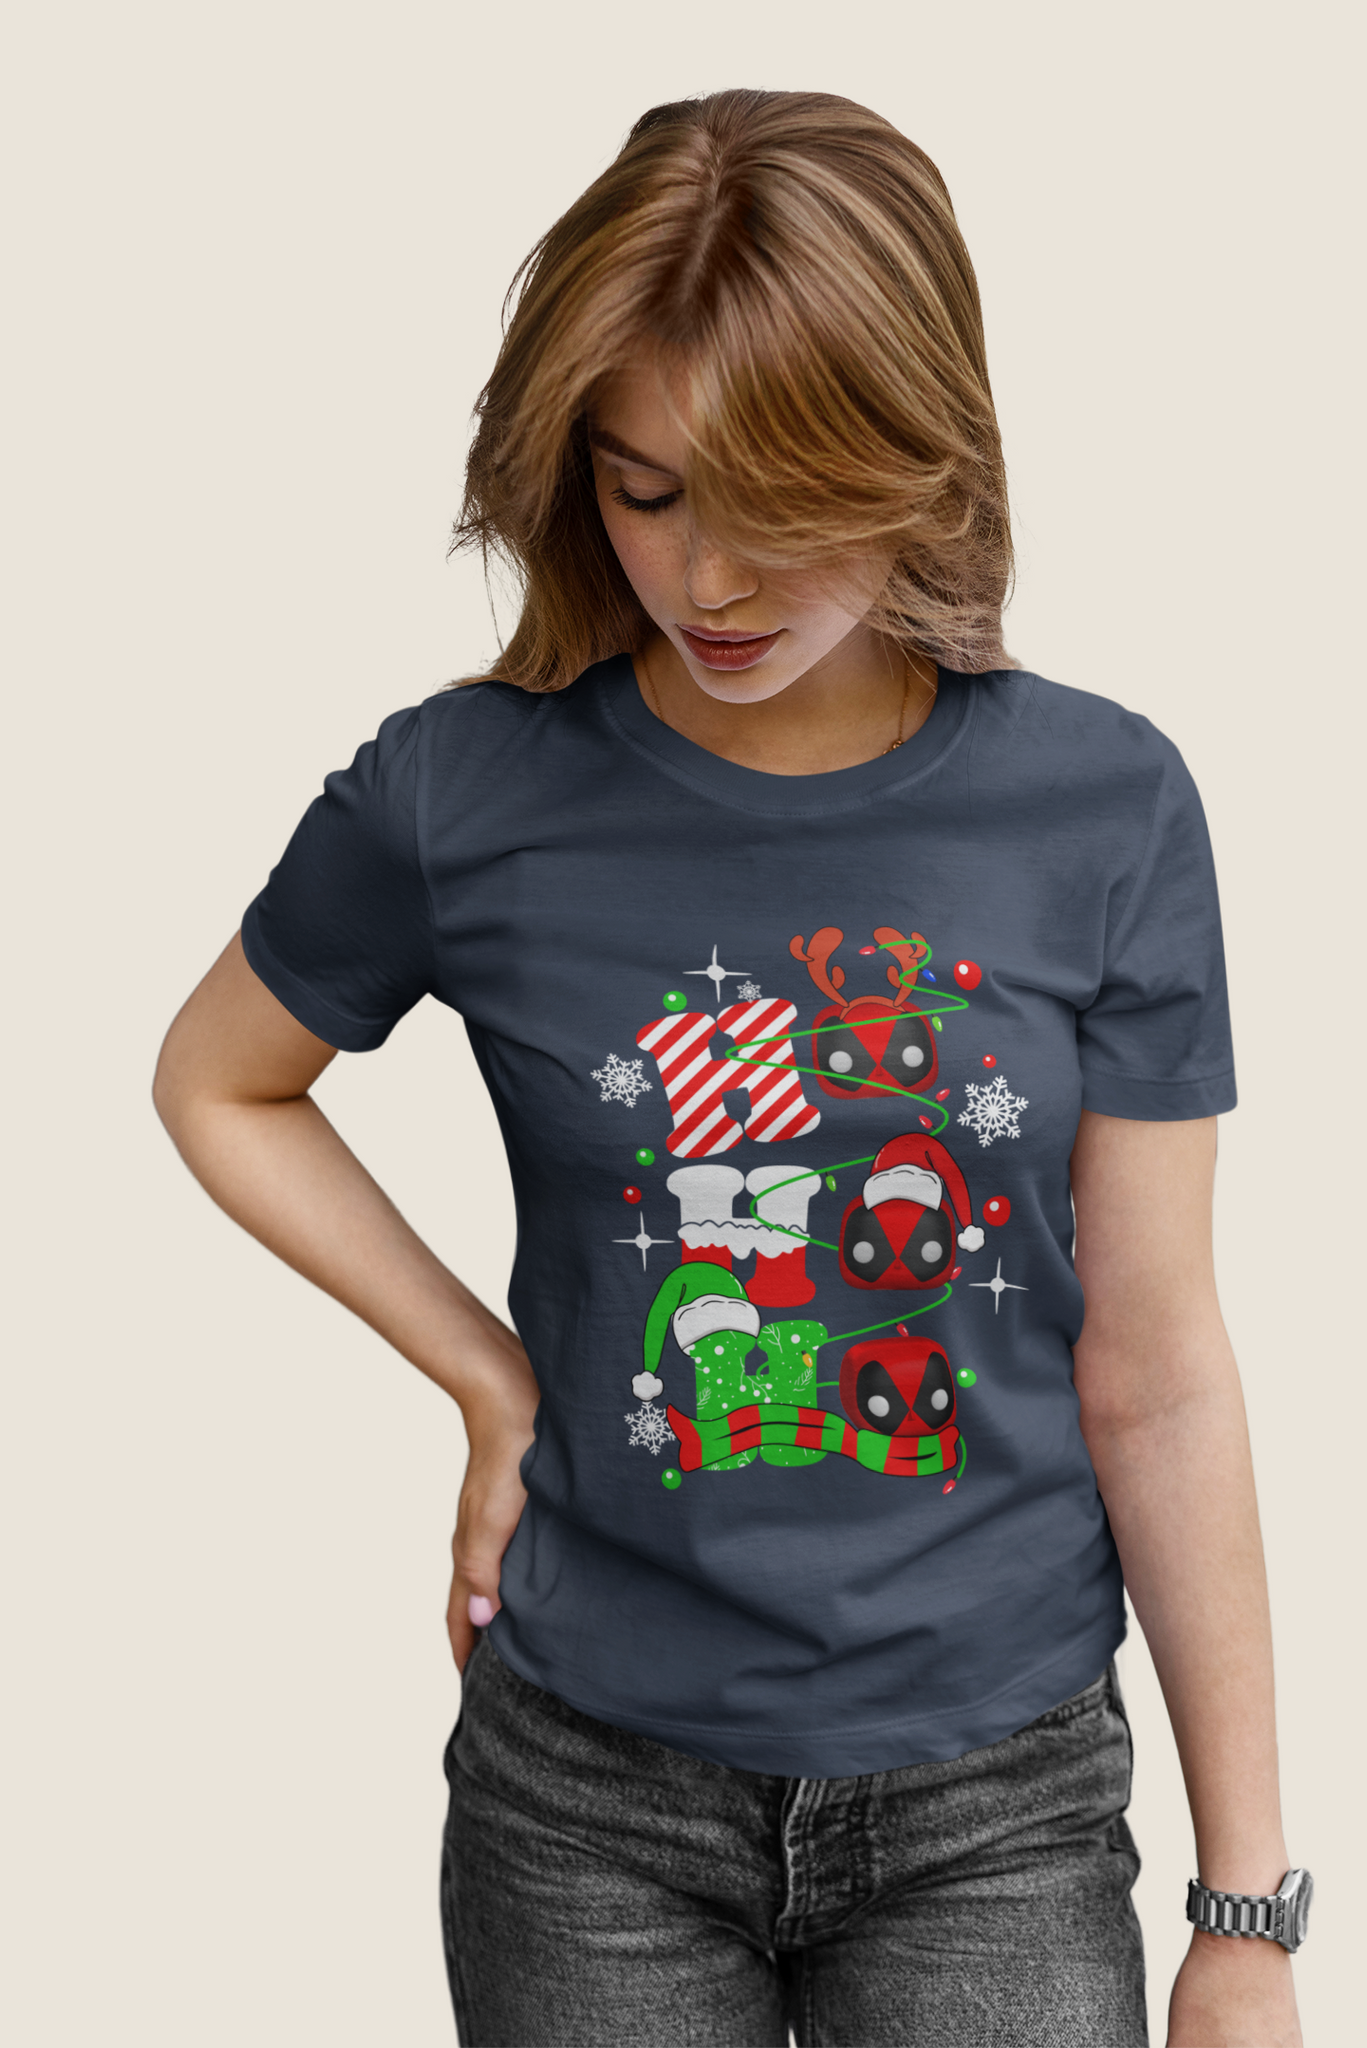 Deadpool T Shirt, Superhero Deadpool T Shirt, Ho Ho Ho Tshirt, Christmas Gifts